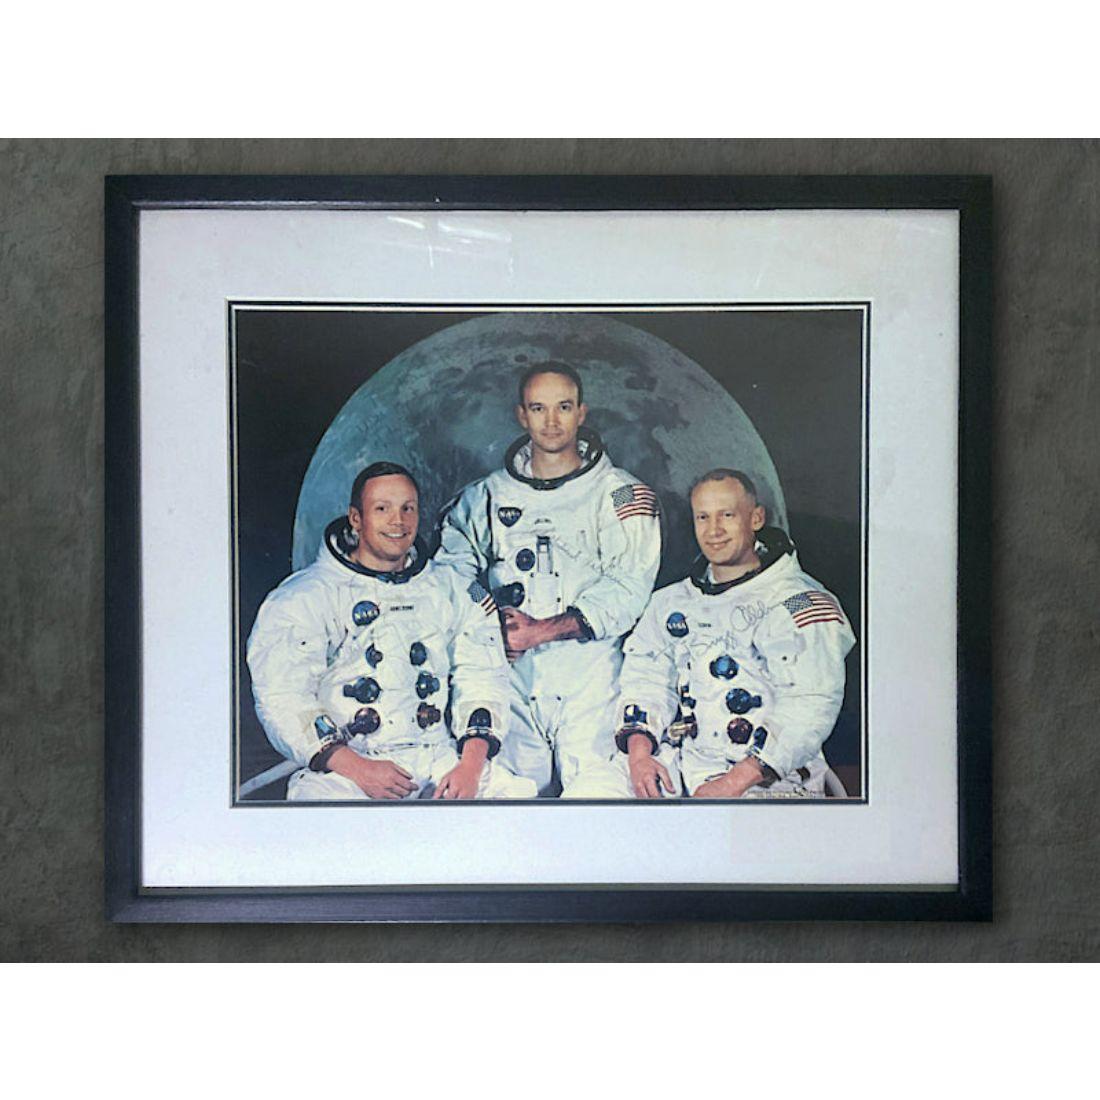 Ein atemberaubendes, übergroßes Apollo 11-Crew-Foto, signiert von Neil Armstrong, Buzz Aldrin und Michael Collins.

Dieses seltene signierte Foto der Apollo 11-Crew in Übergröße misst 14